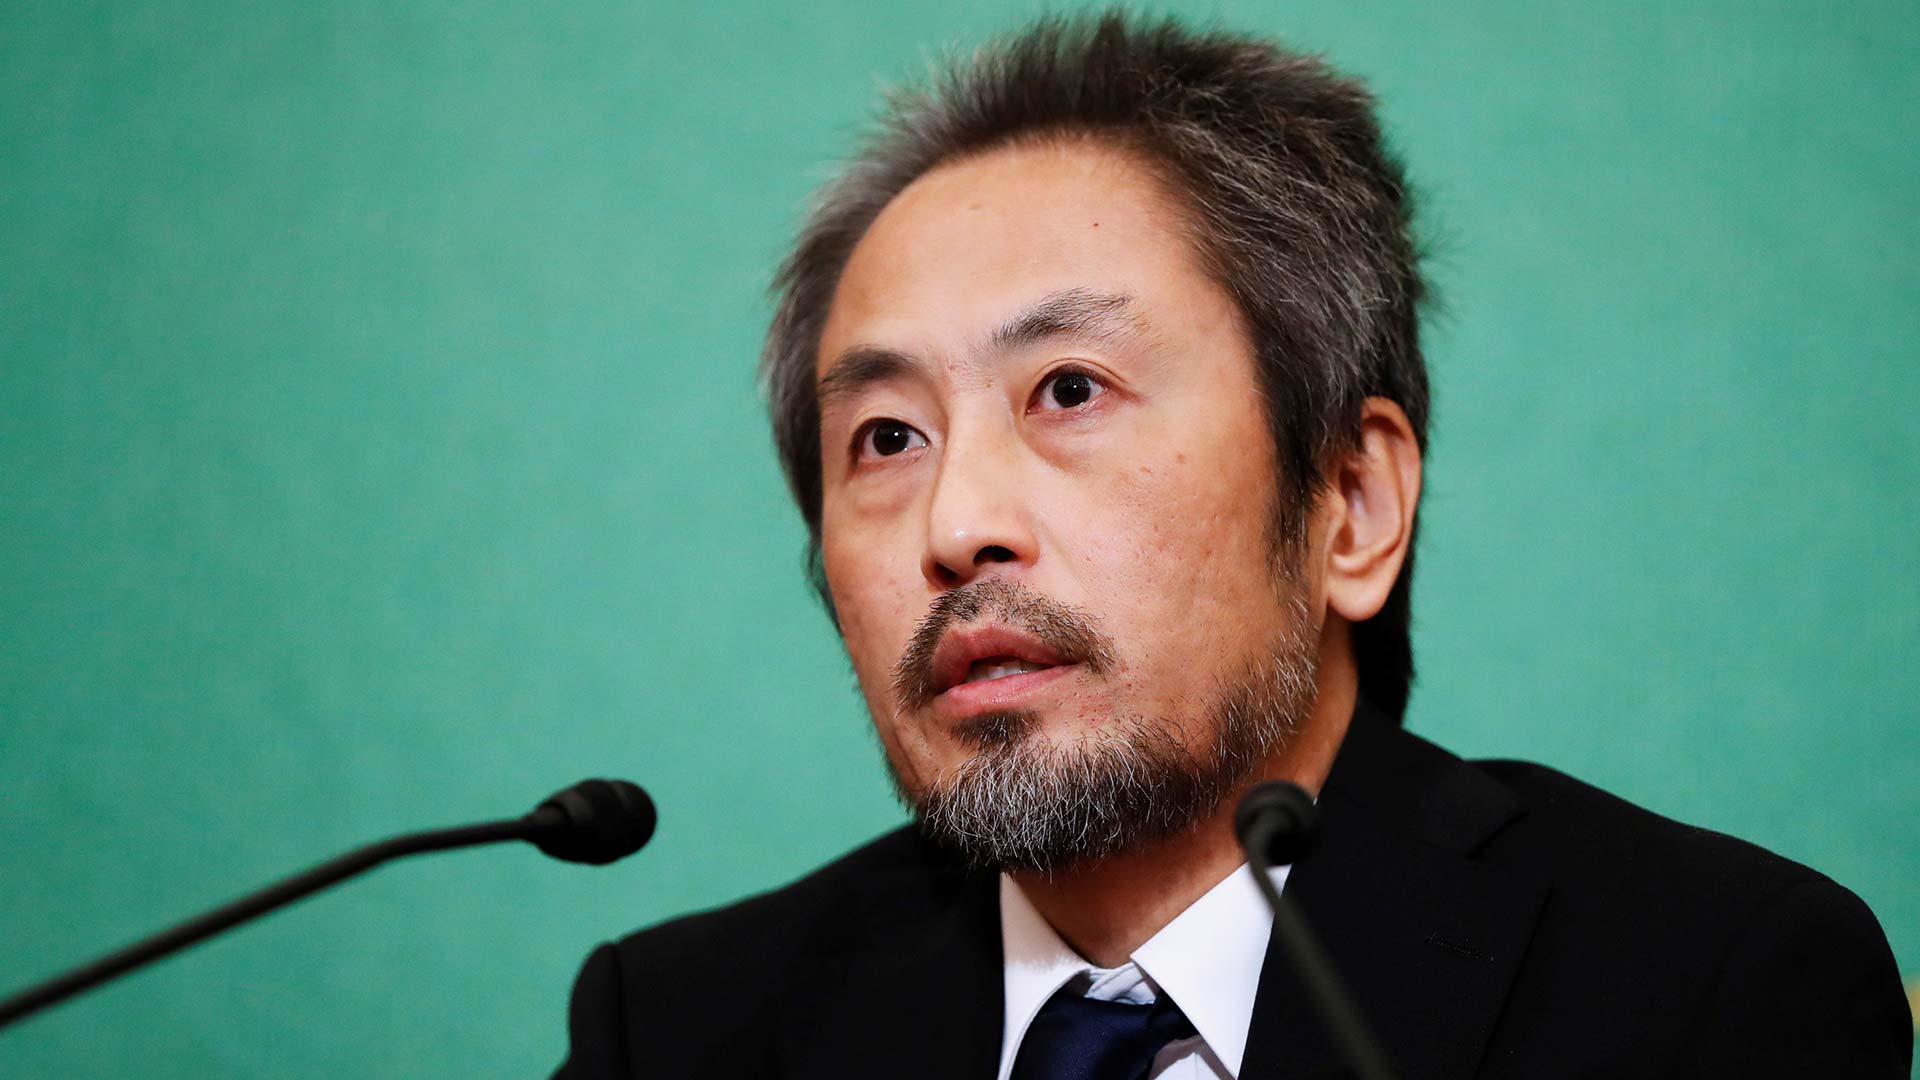 El periodista japonés secuestrado tres años en Siria pide perdón por "causar problemas"